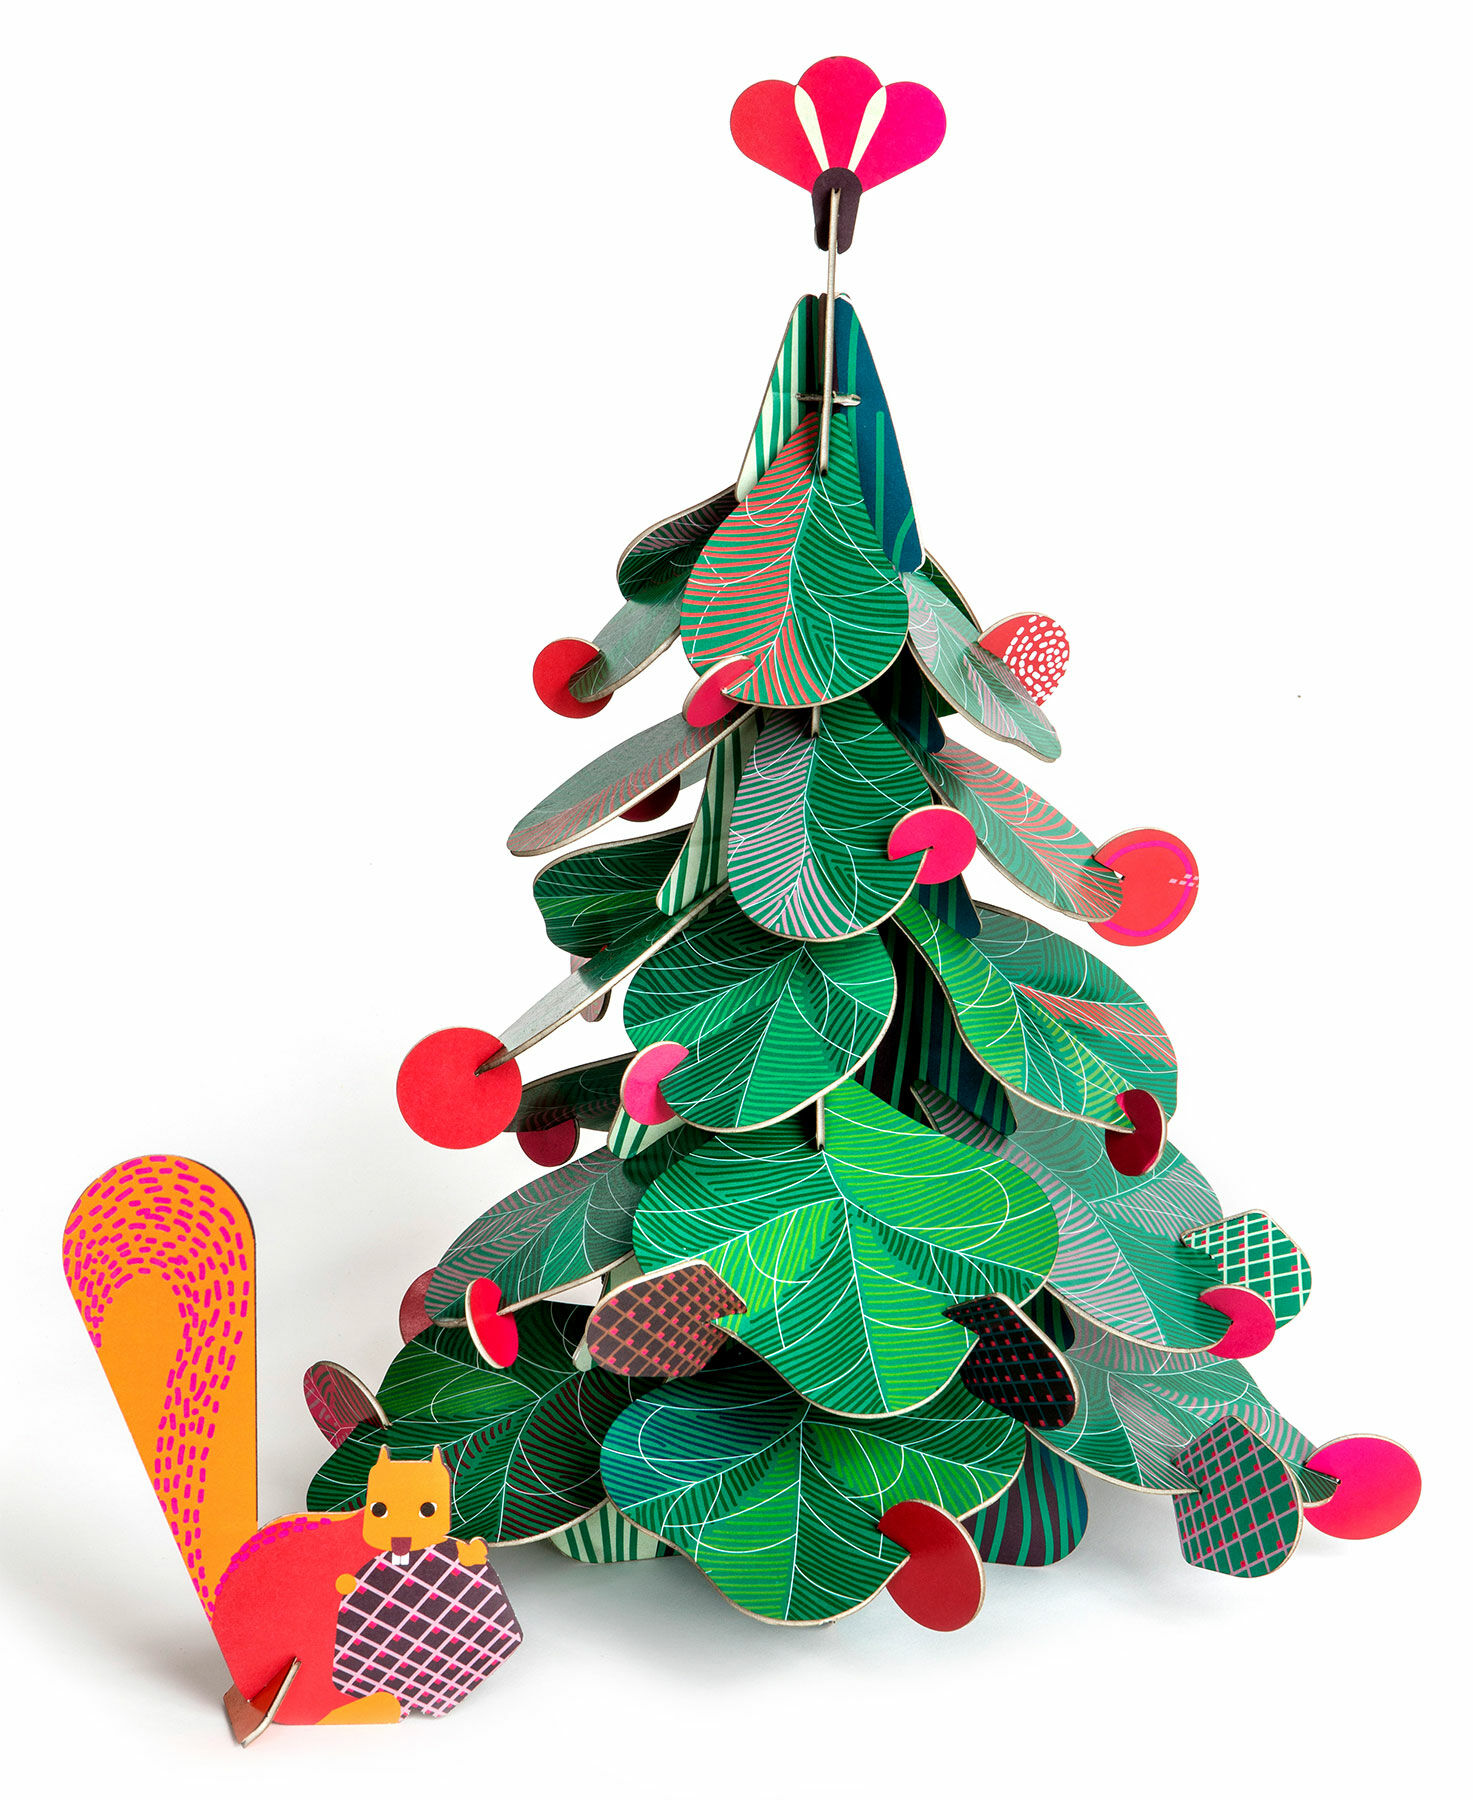 3D-Objekt "Christmas Tree Big" (Höhe 45 cm) aus recyceltem Karton, DIY von studio ROOF